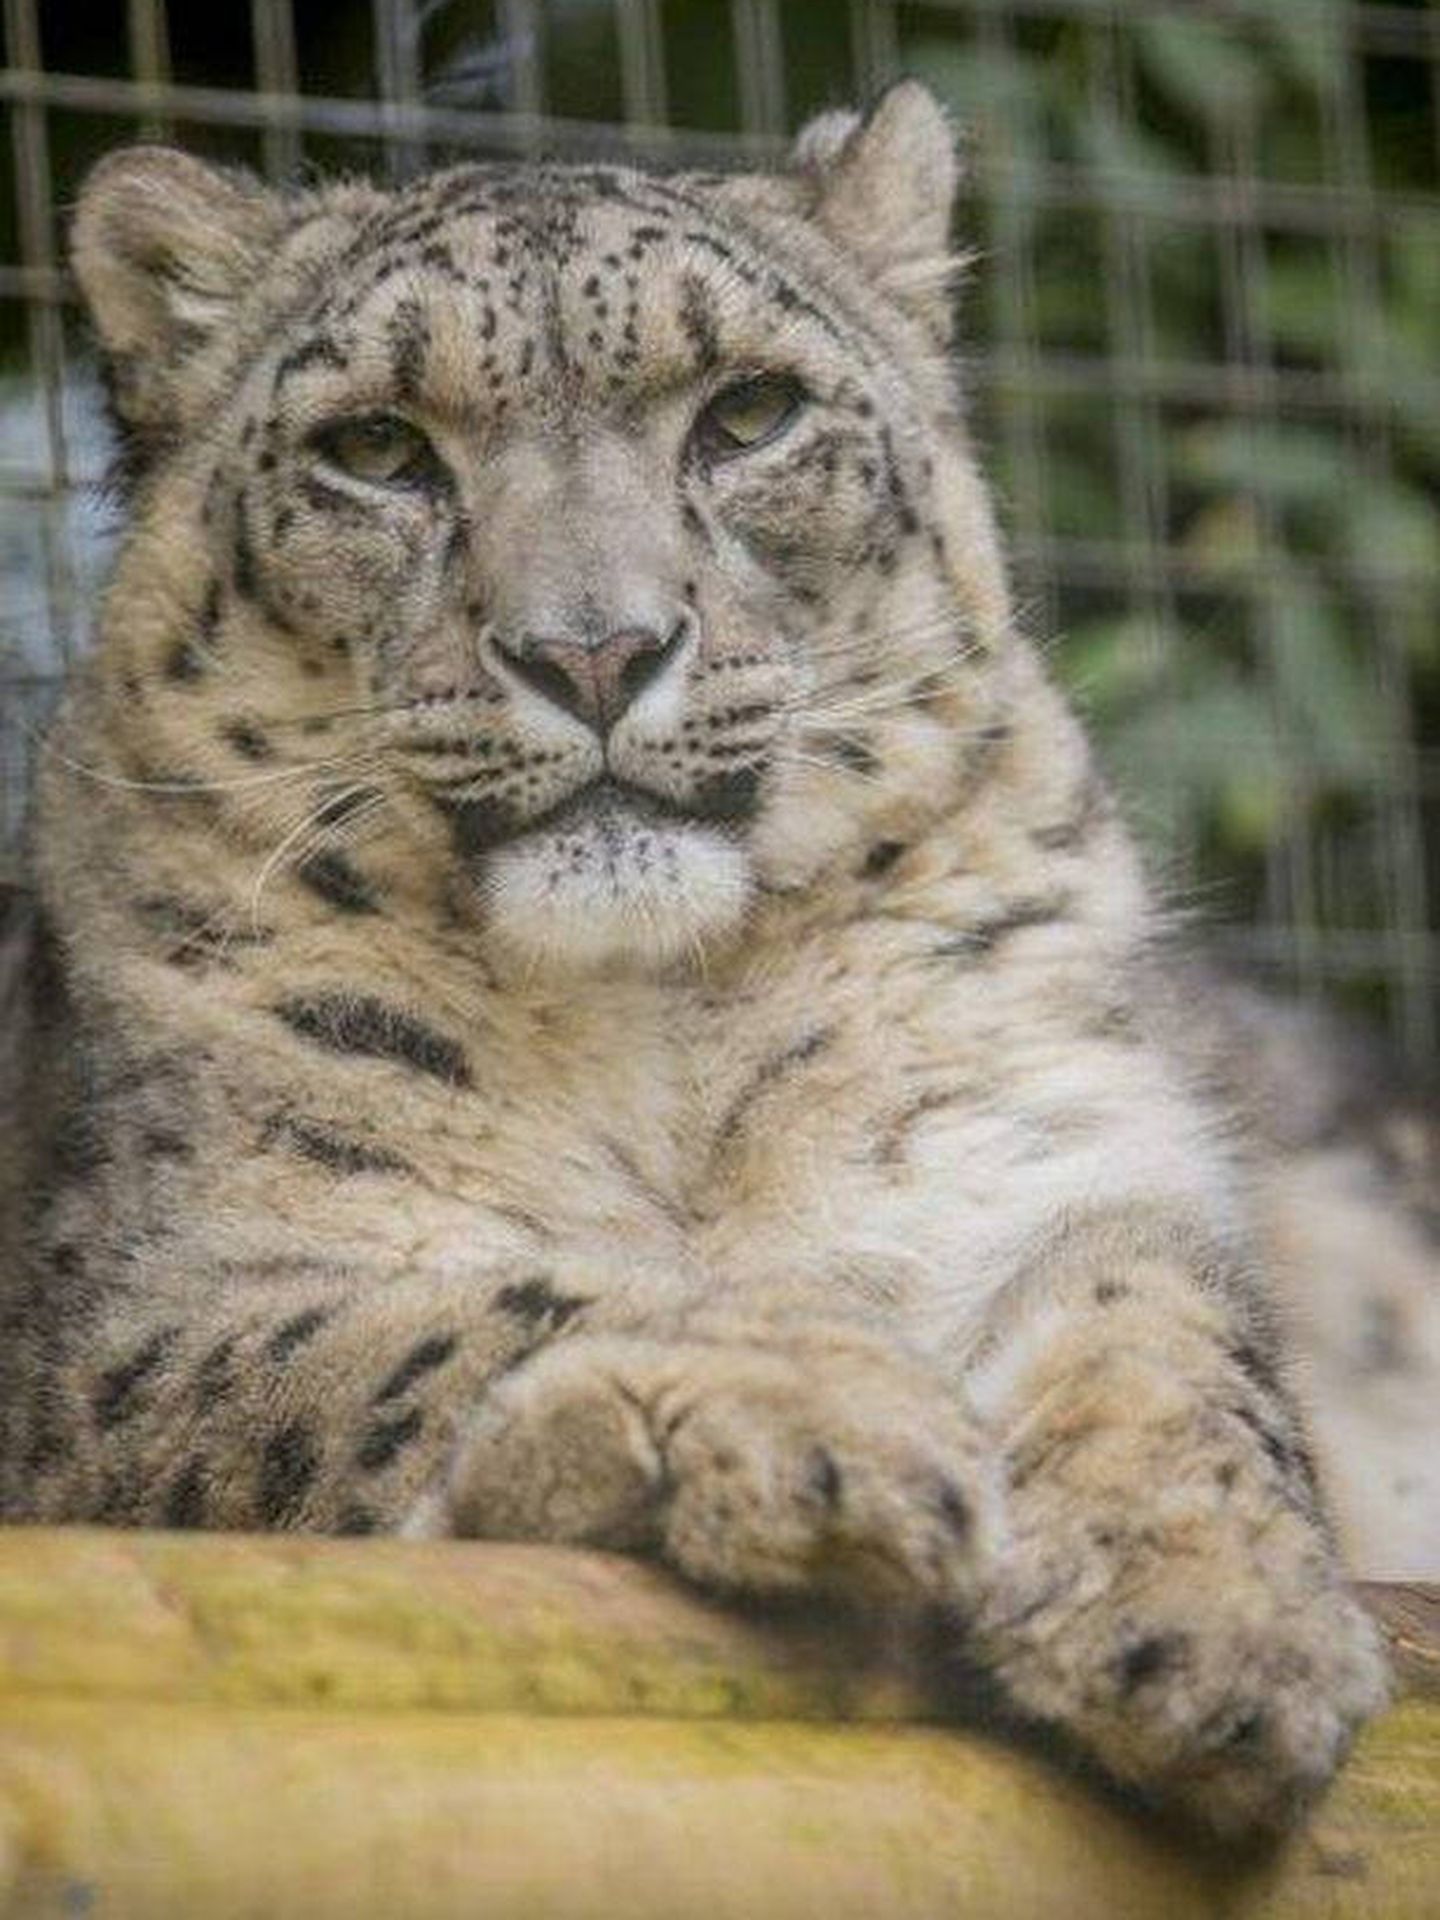 Margaash tenía 8 años y vivía con una hembra de 3 en su jaula (Foto: Zoo de Dudley)